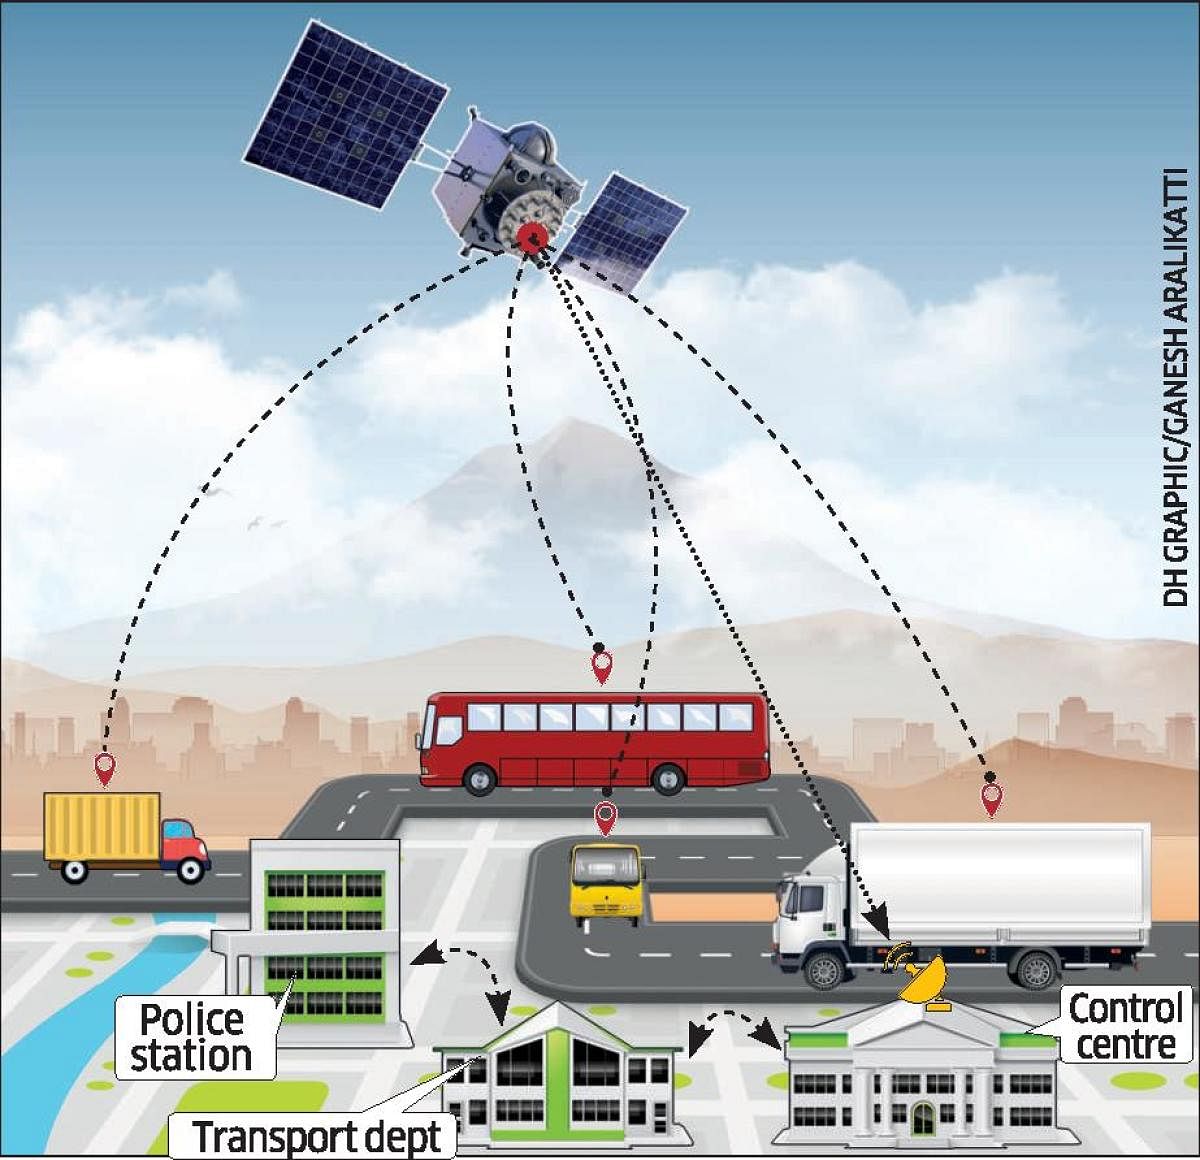 Tracking mandatory for buses, trucks from Jan 1